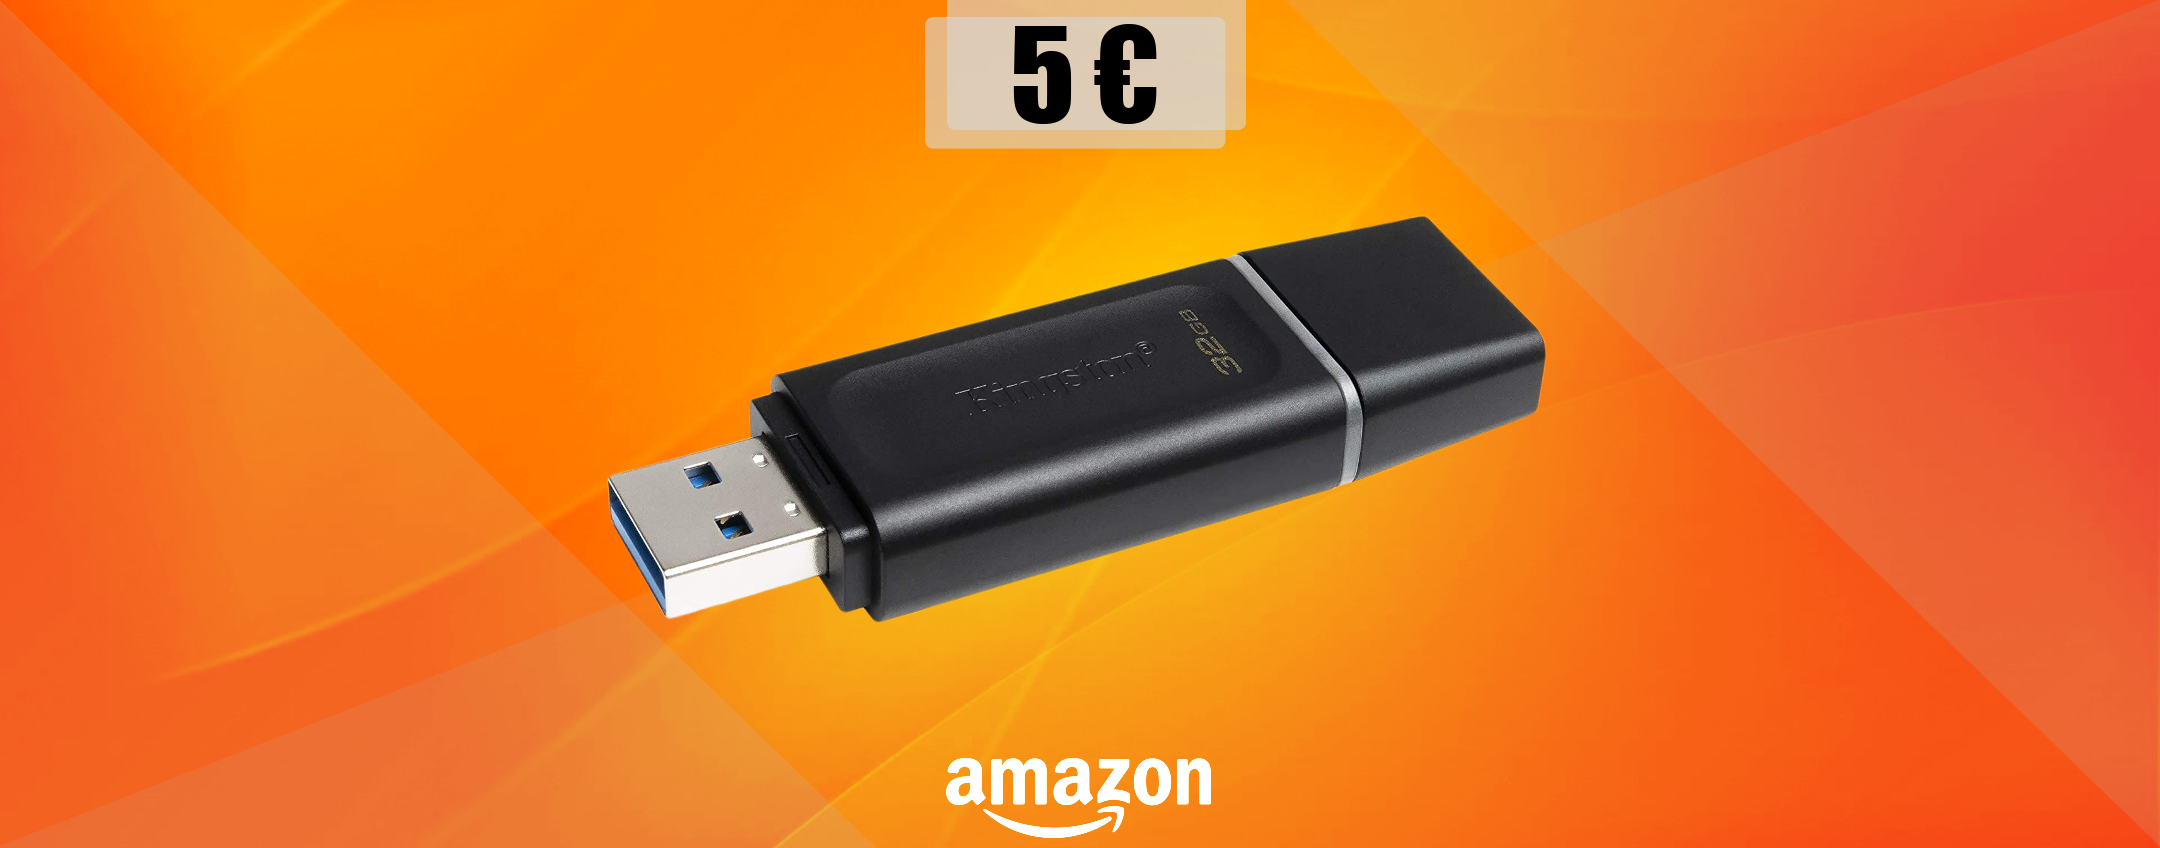 Chiavetta USB 32GB, la porti a casa con appena 5€: ERRORE di prezzo?